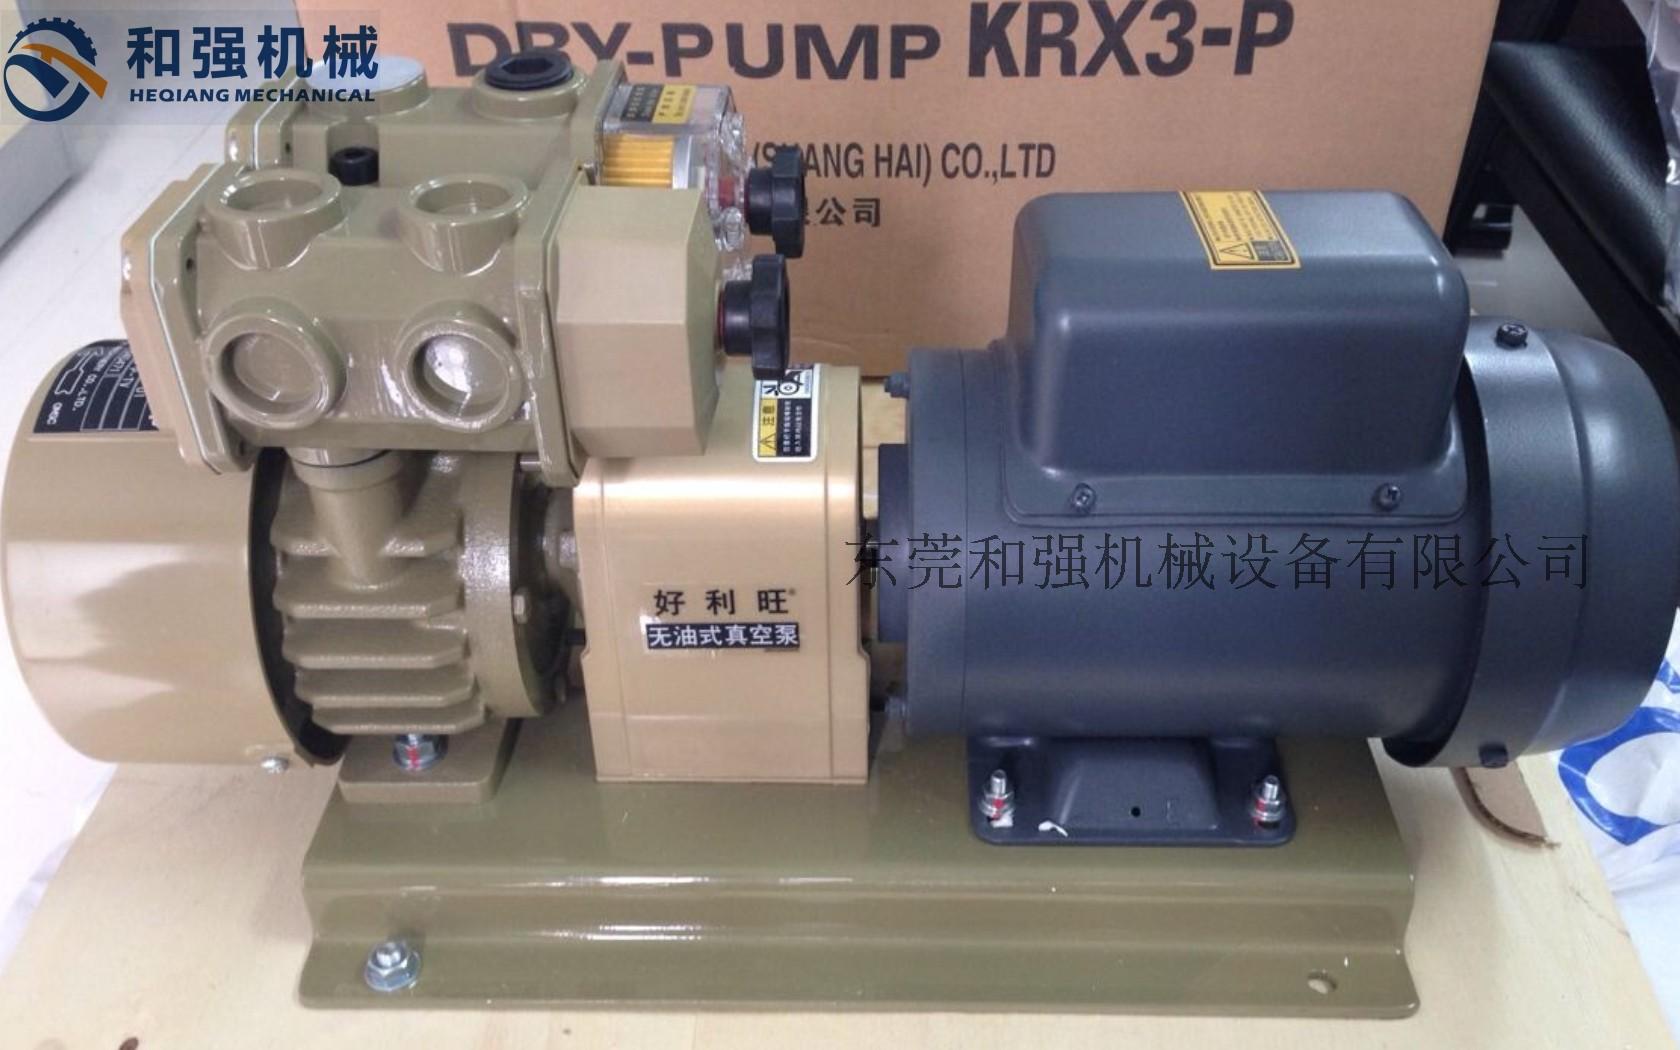 好利旺）ORION真空泵 KRX3-P-VB-03 配PCB设备